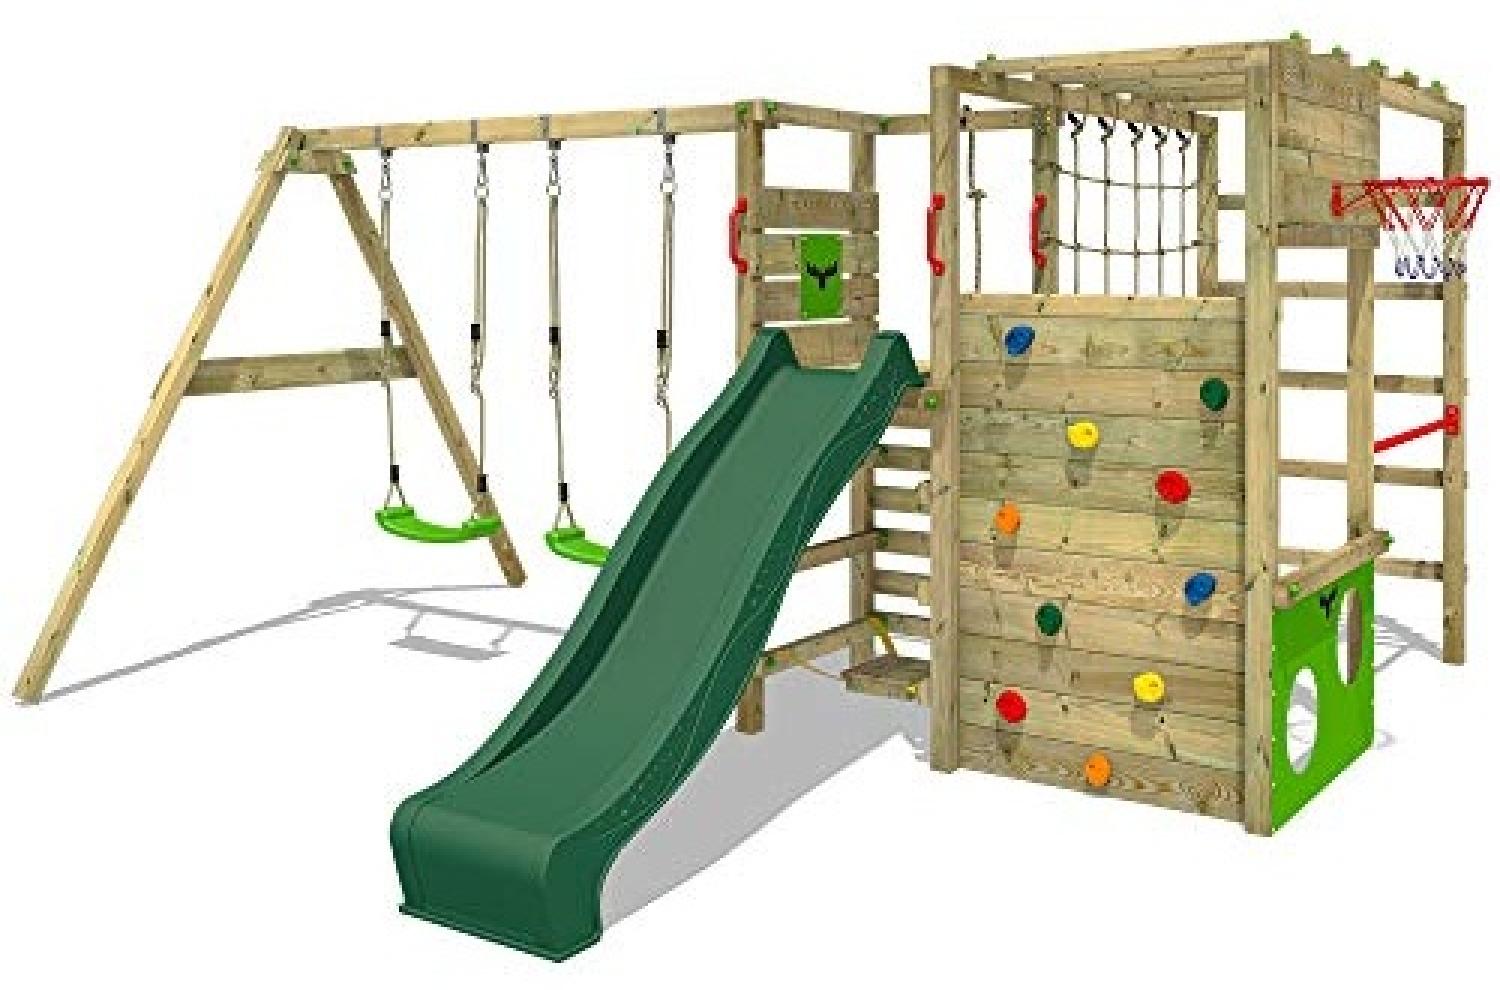 FATMOOSE Klettergerüst Spielturm ActionArena mit Schaukel & grüner Rutsche, Gartenspielgerät mit Leiter & Spiel-Zubehör Bild 1